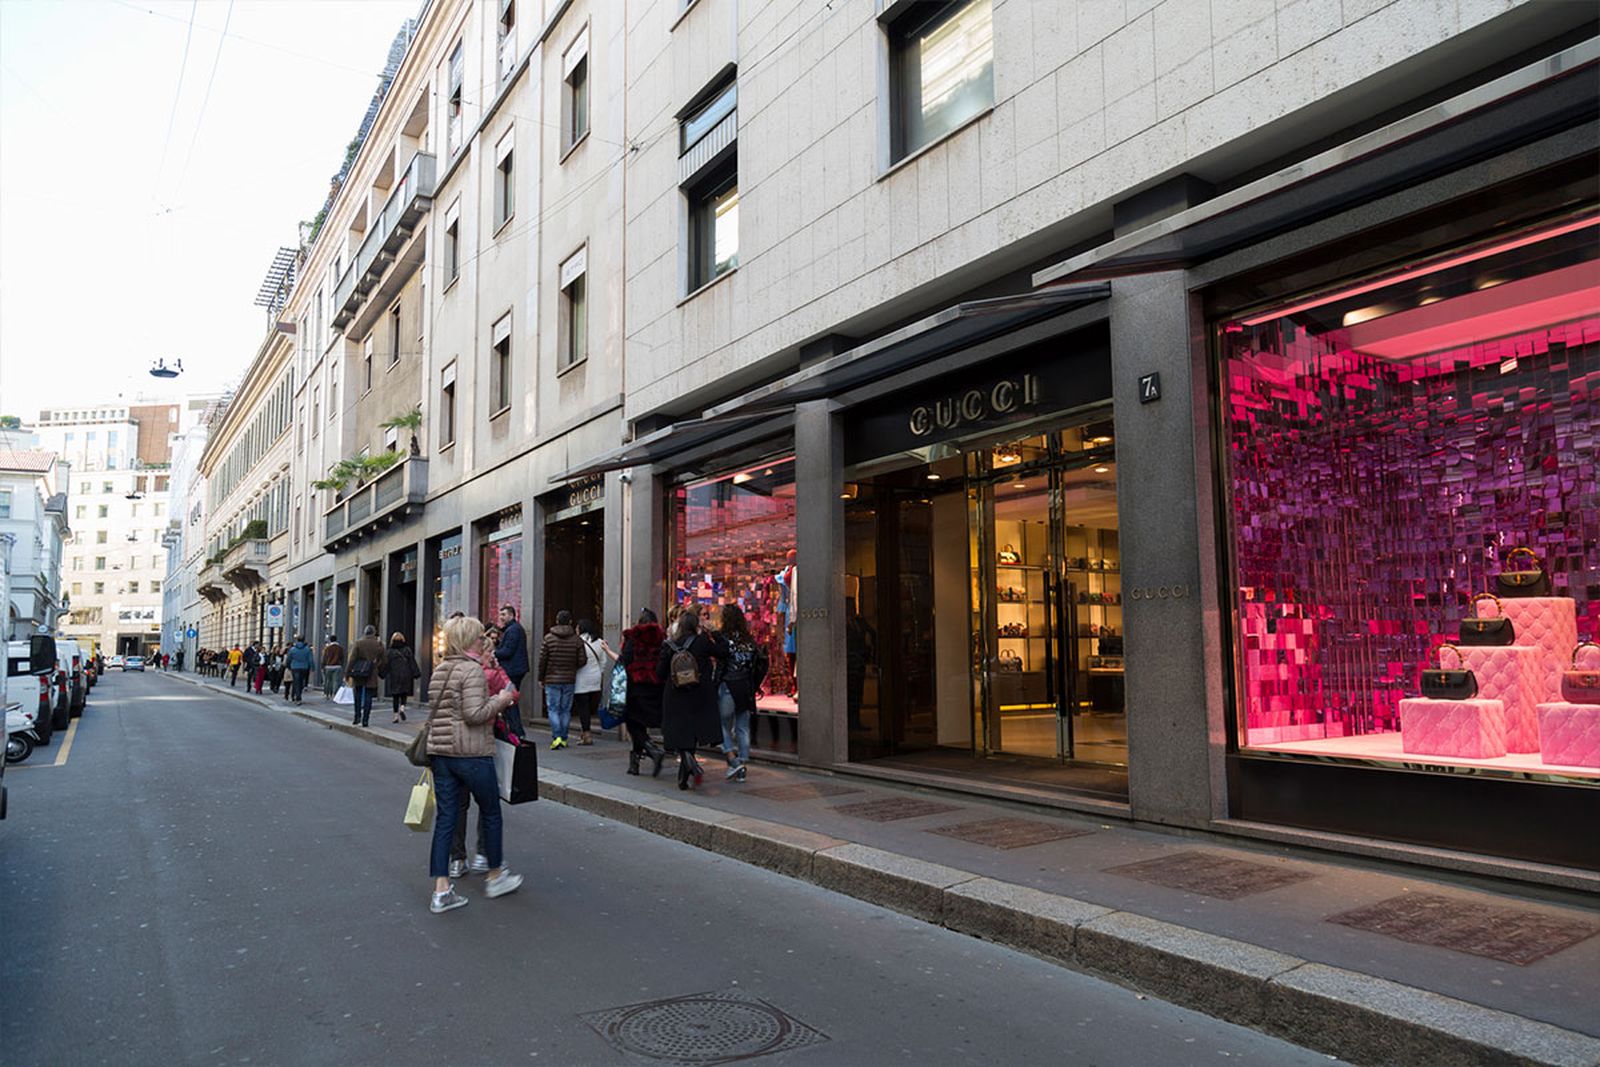 Rechtdoor Heerlijk kristal Milan Shopping Guide: the City's Best Fashion Stores